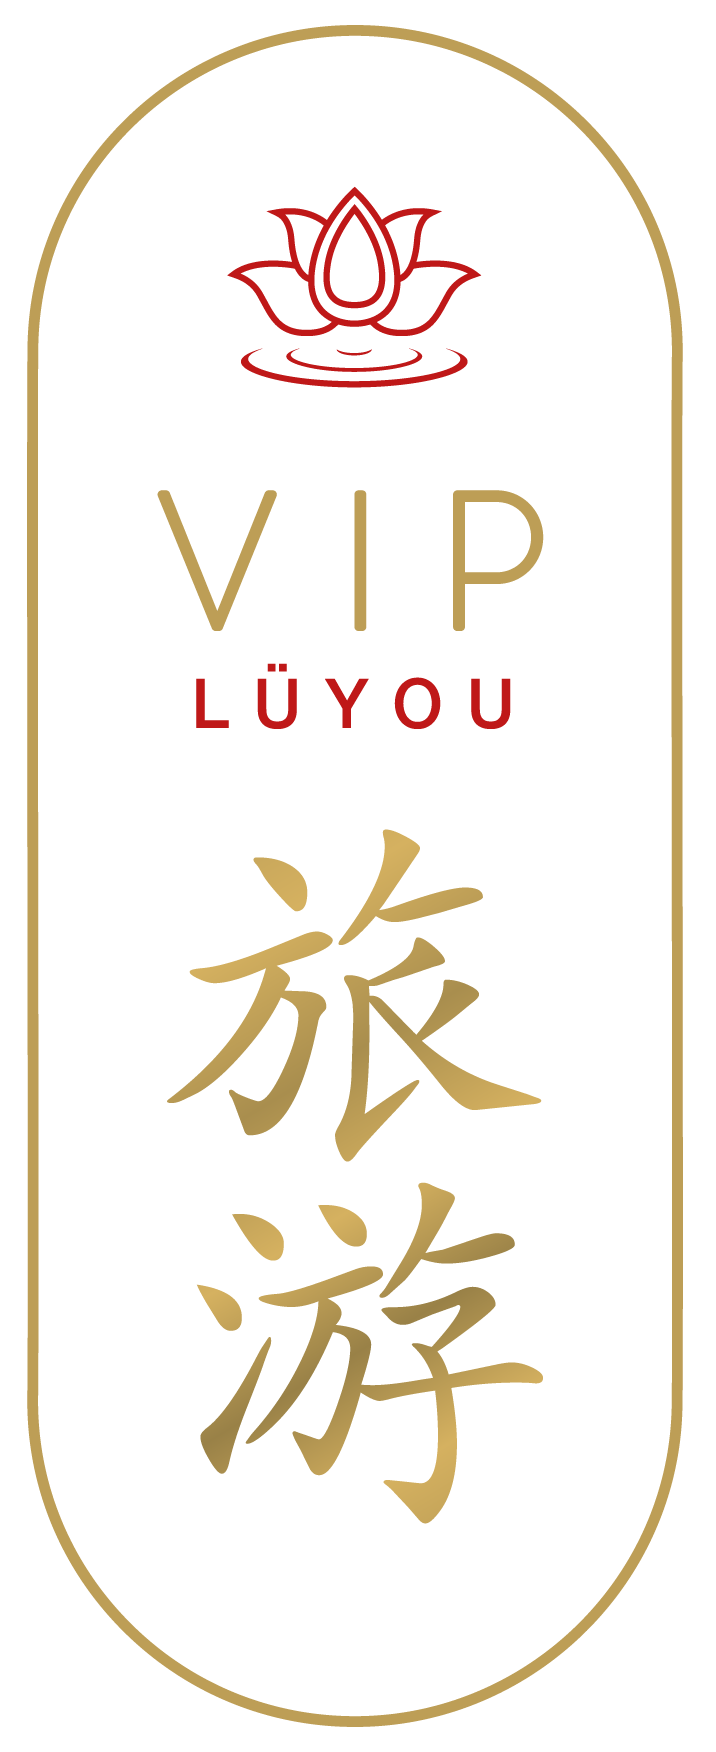 VIP Lüyou S.L.